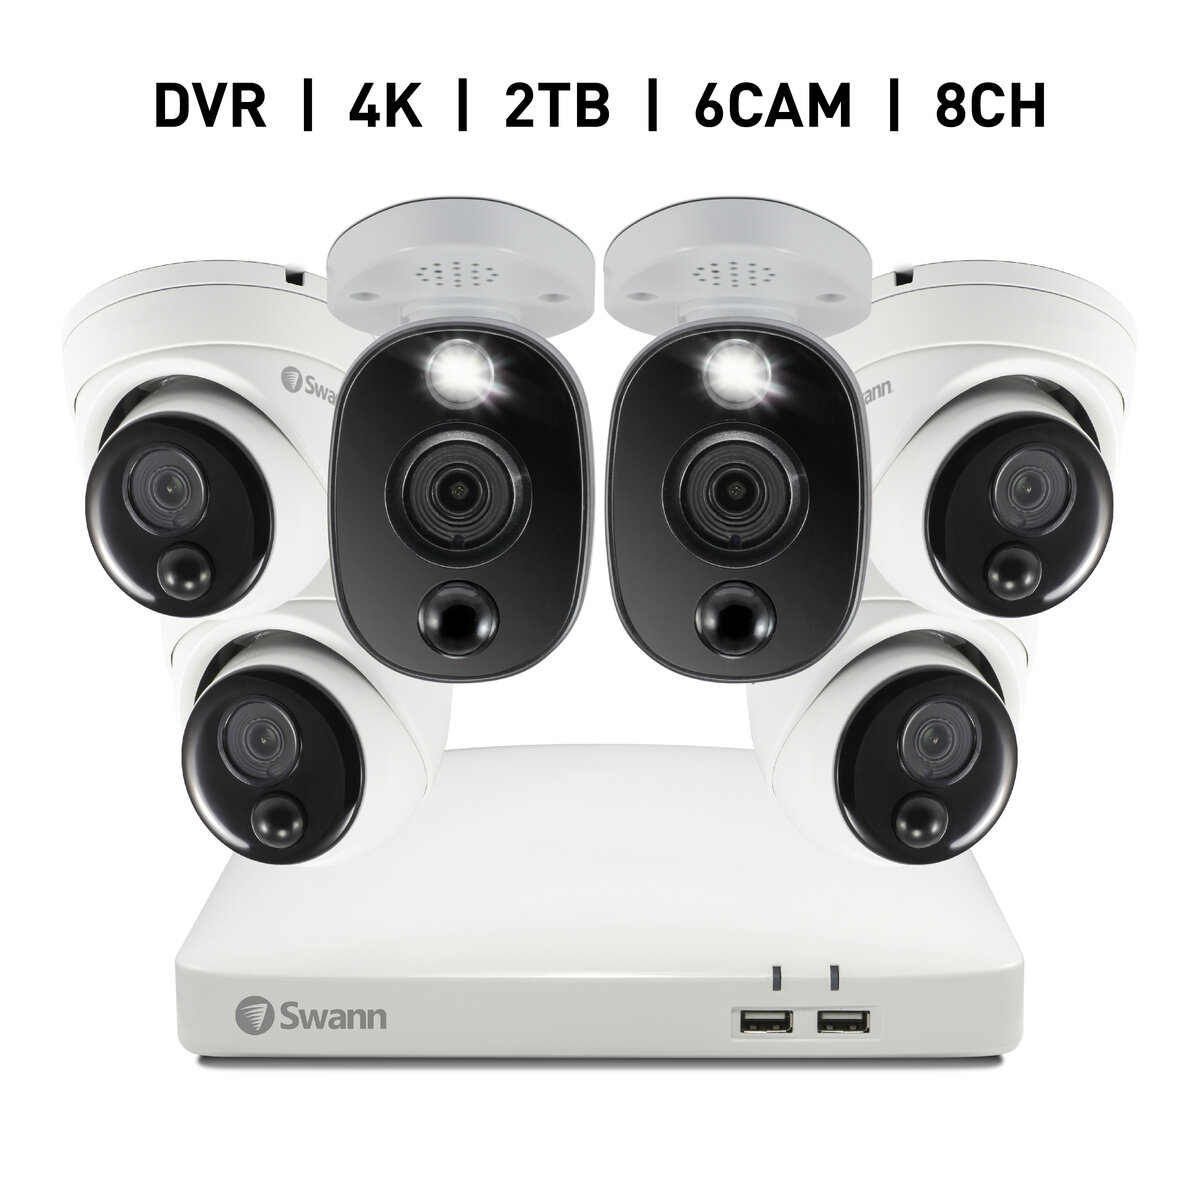 Swann 8CH 4K DVRシステム 2TB 警告ライト バレット型 カメラ2台ドーム型 カメラ4台 計6台セット